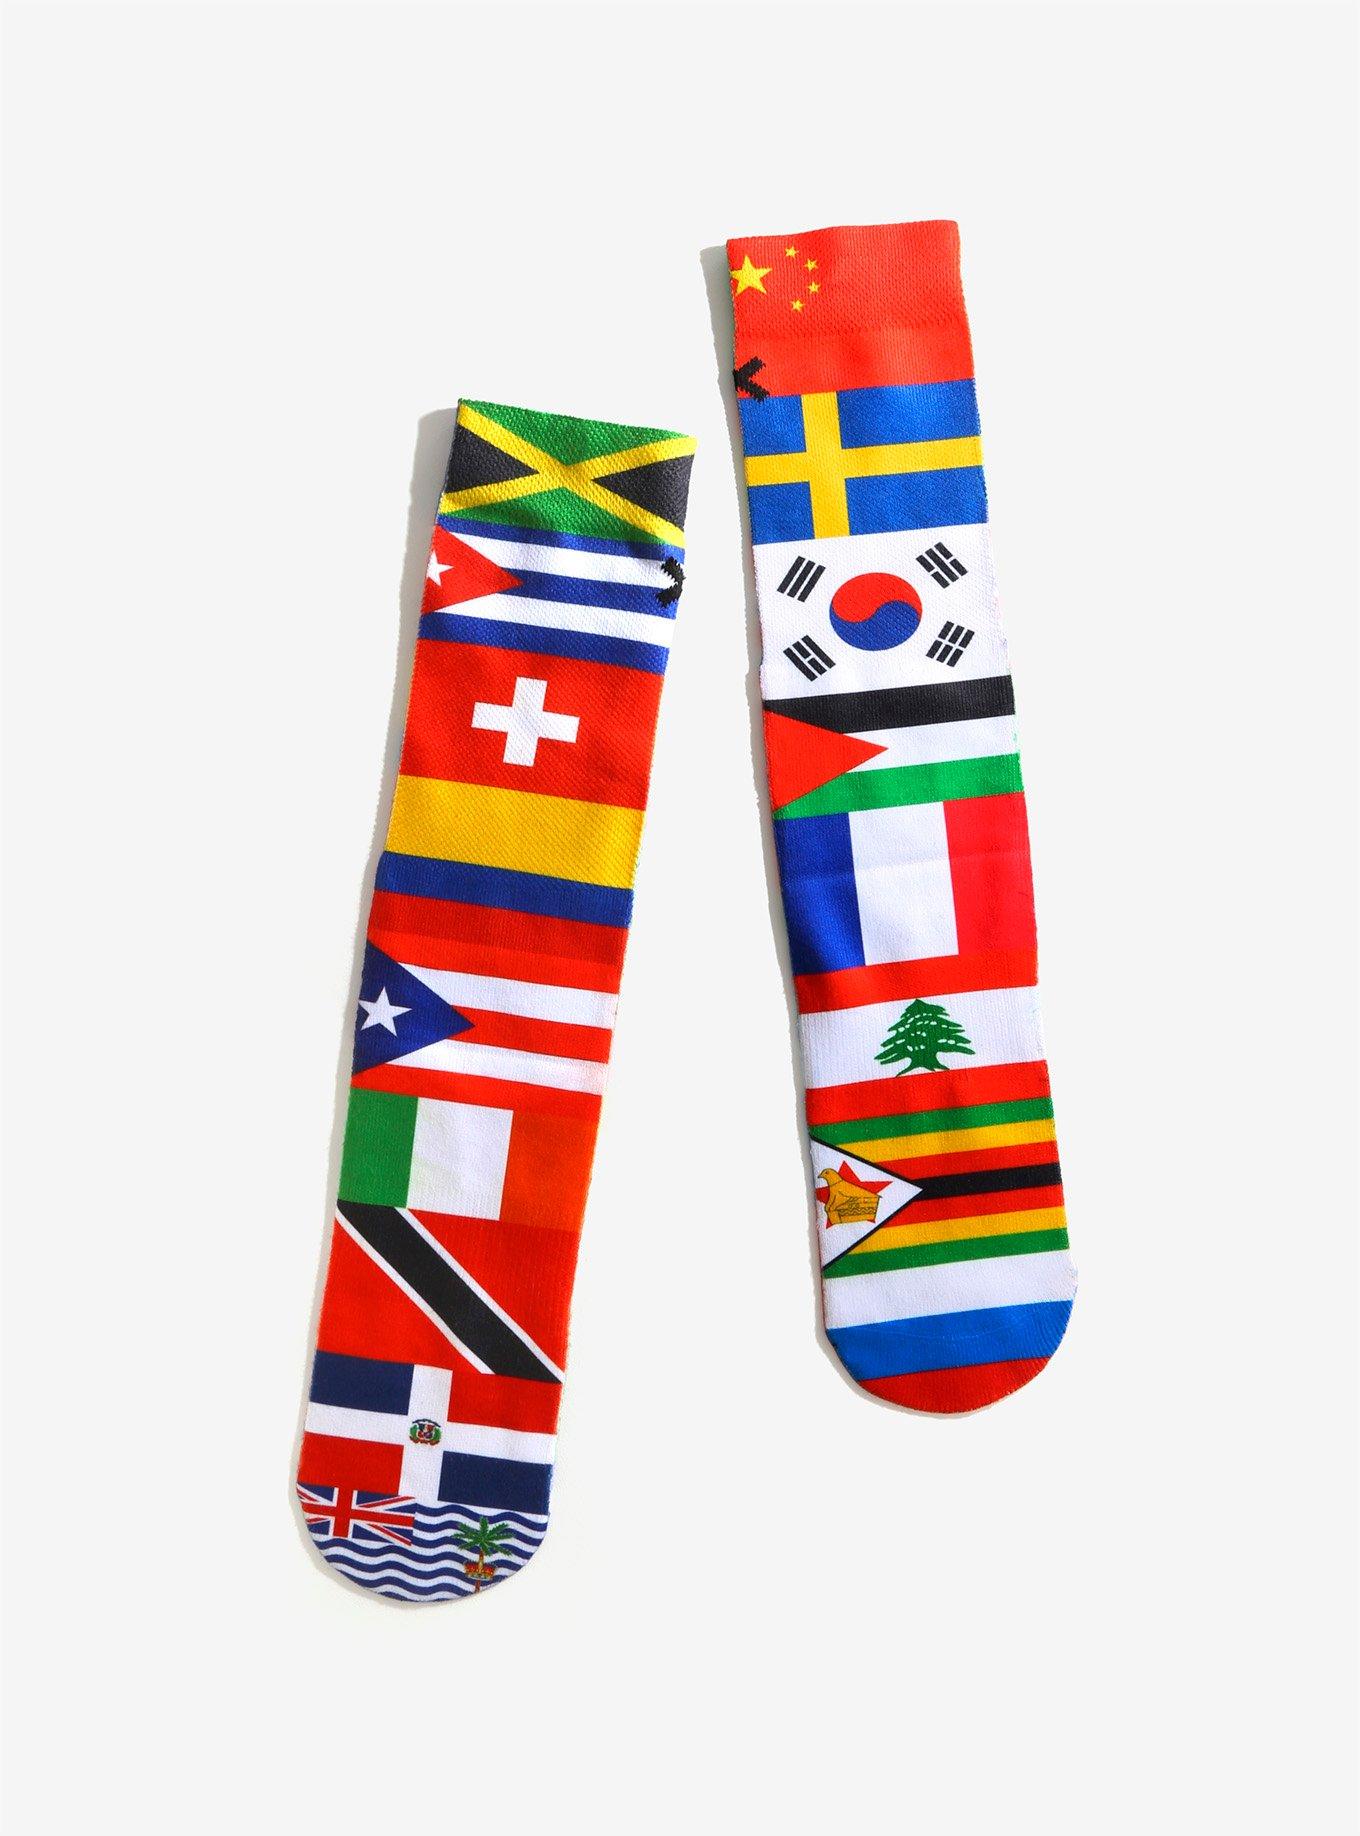 Odd Sox United Nations Flag Crew Socks, , hi-res